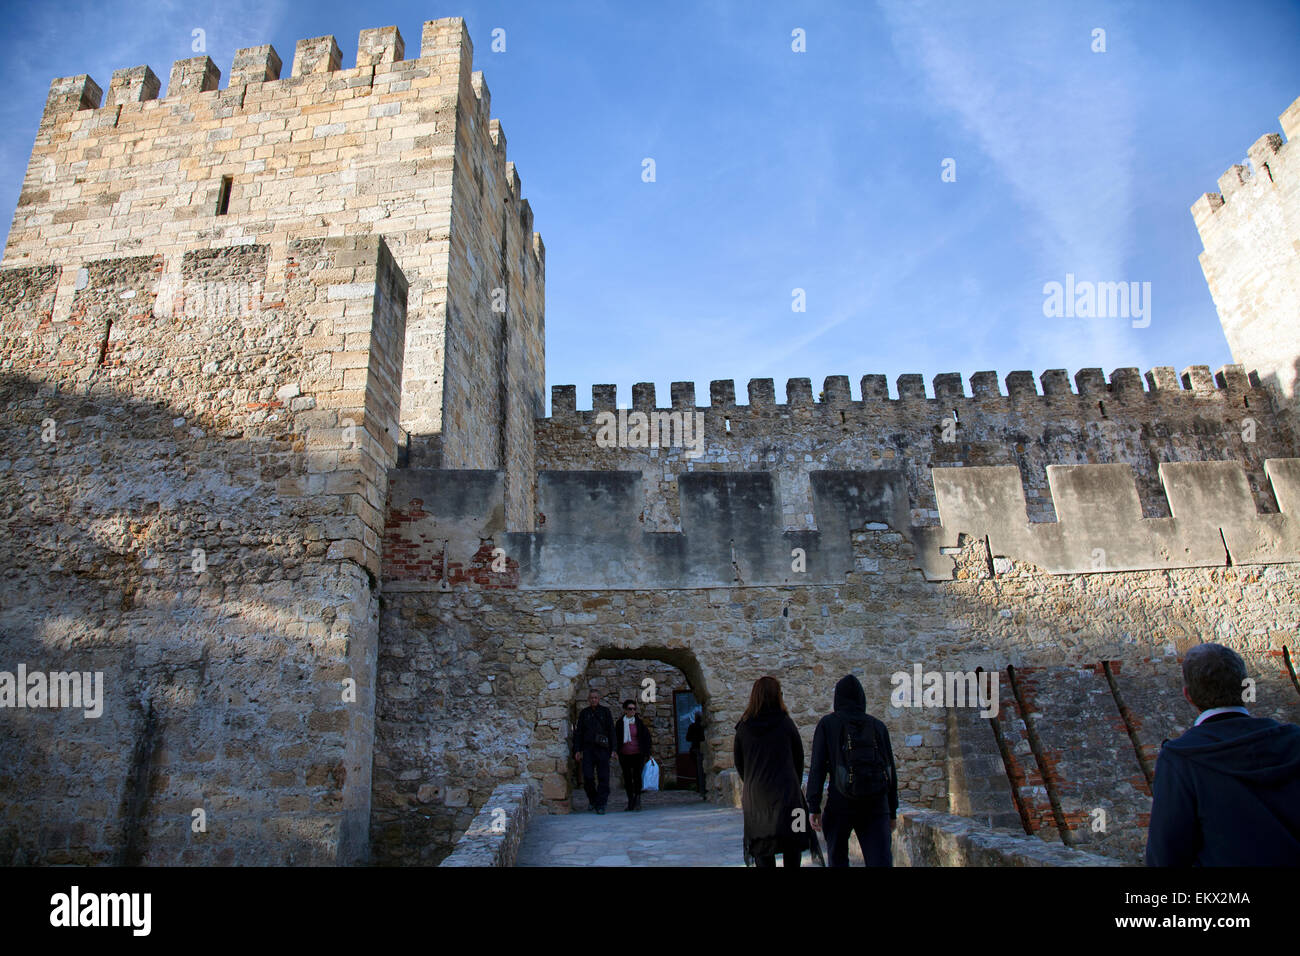 Castelo de São Jorge in Lissabon - Portugal Stockfoto